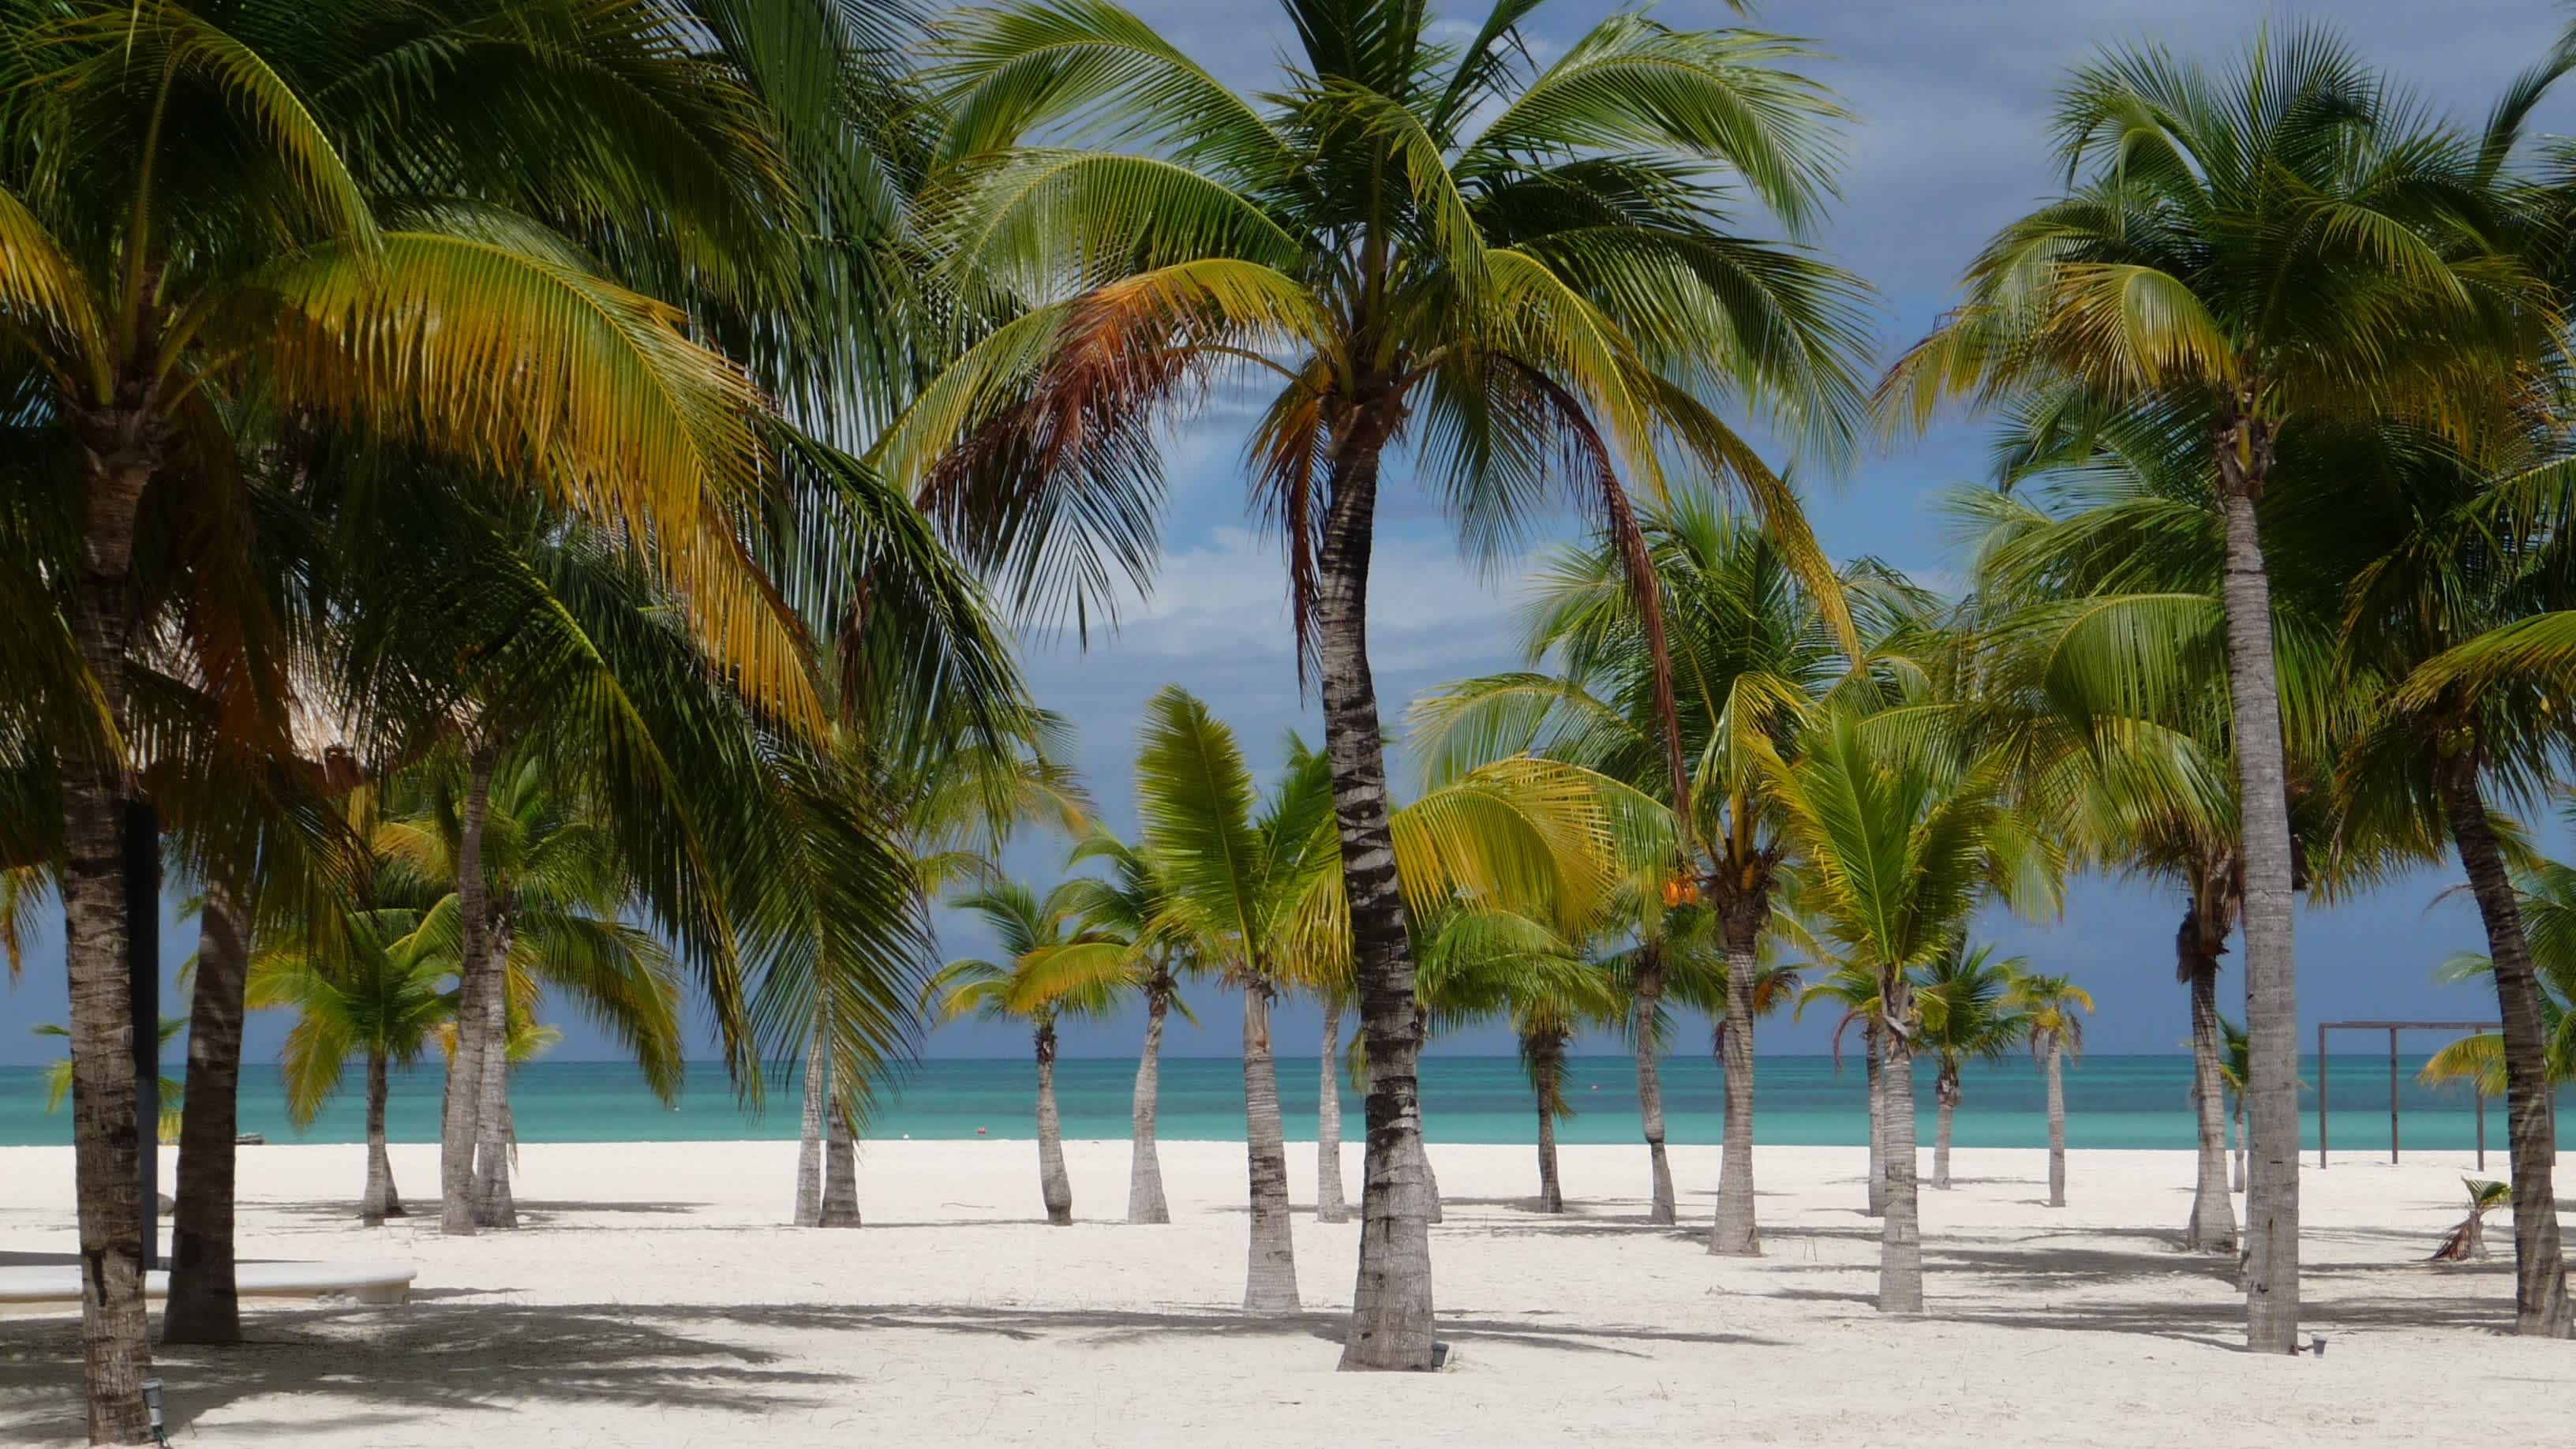 Palmiers sur le sable blanc au bord de l'eau turquoise de la plage Isla de Pasion au Mexique